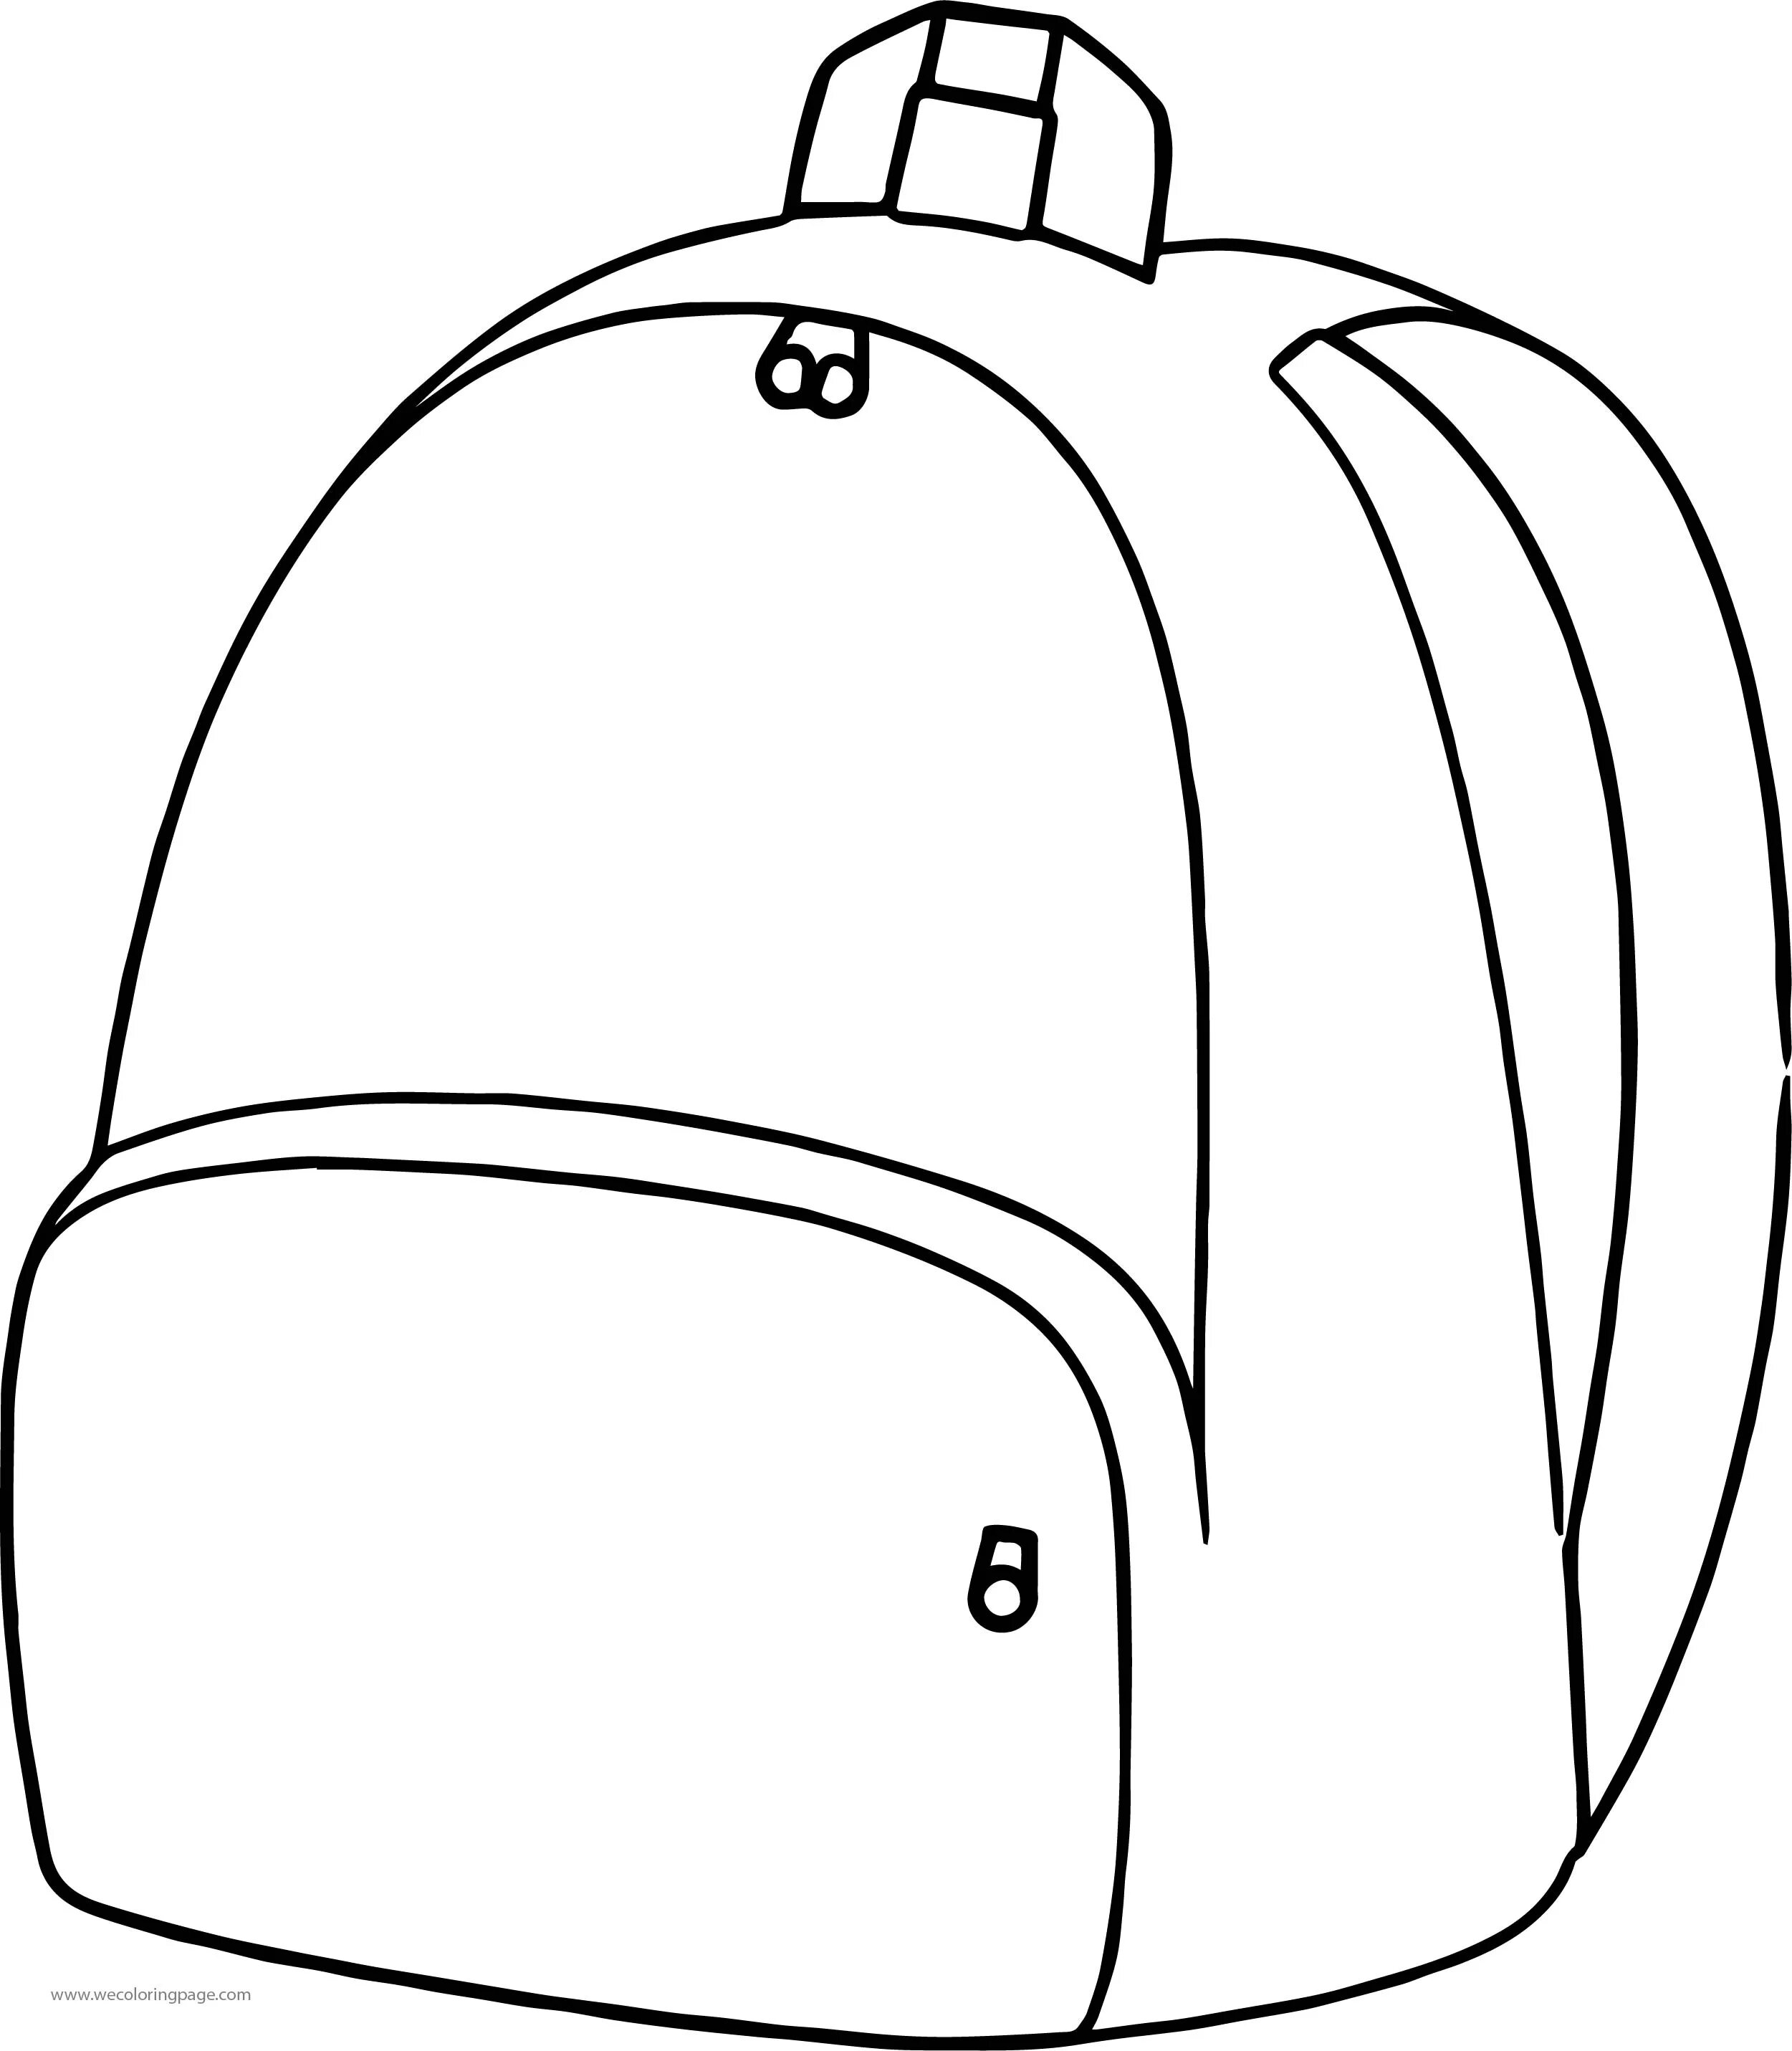 Раскраска radiant satchel для дошкольников